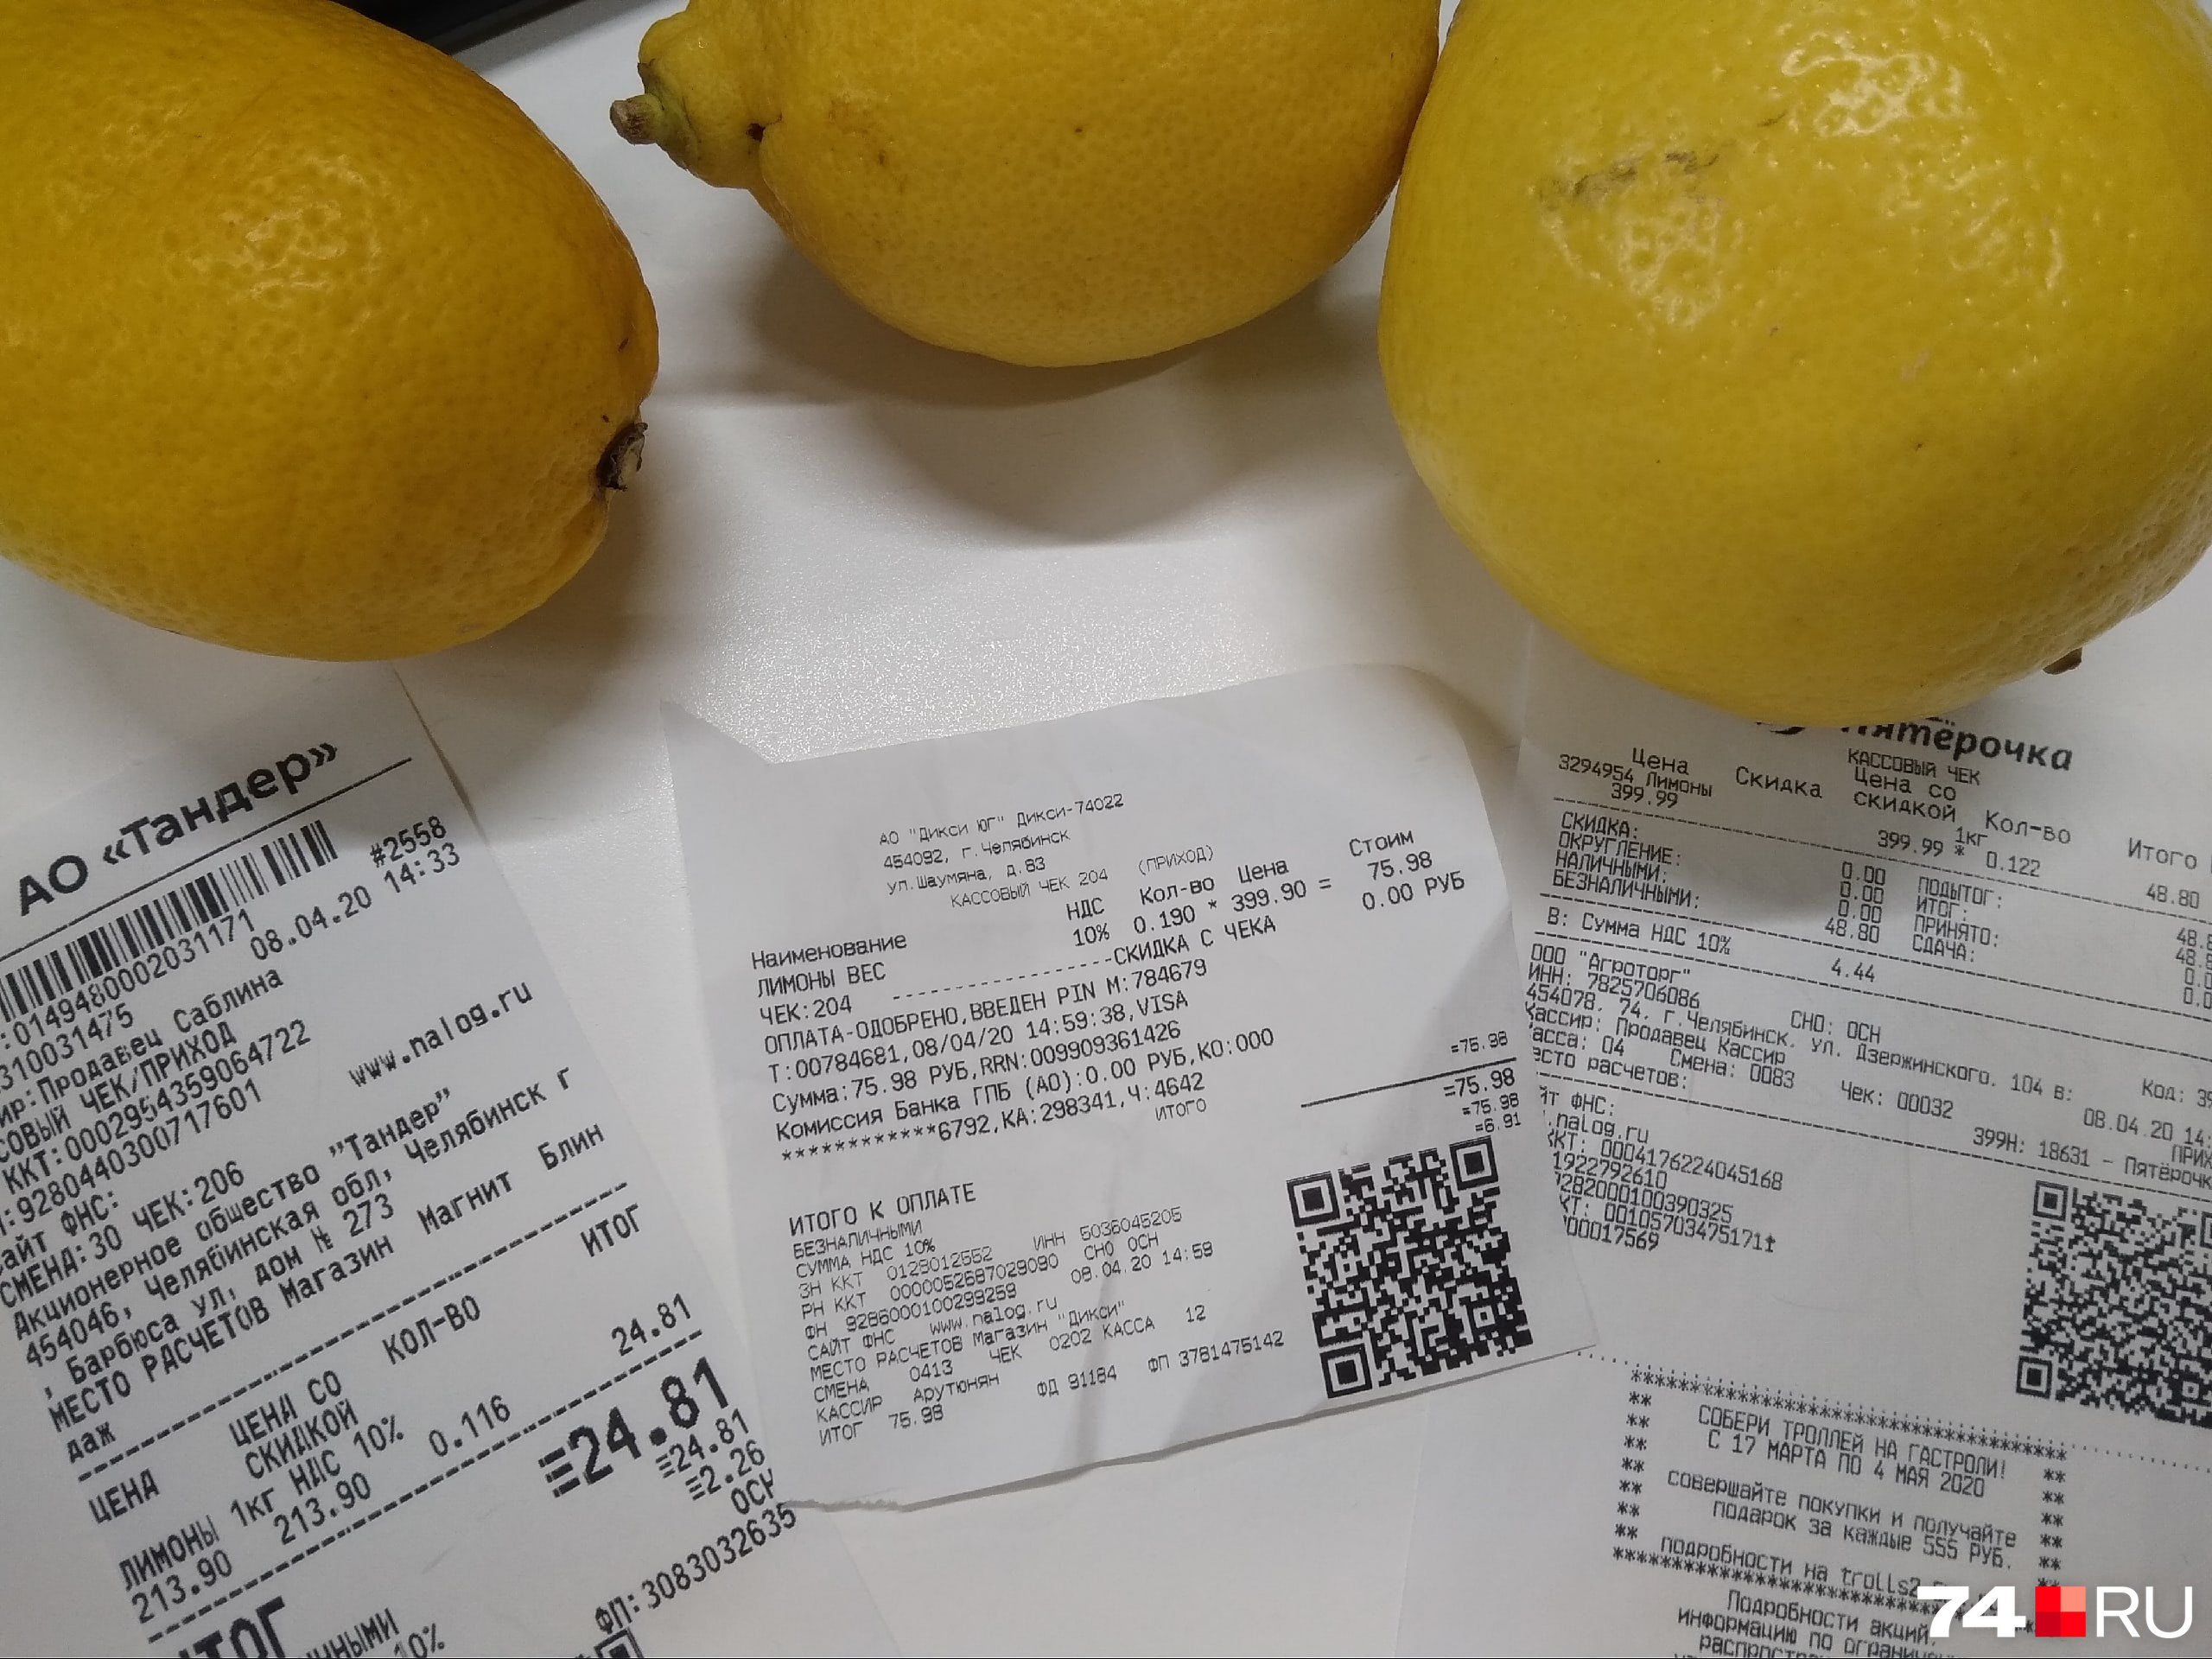 Мы купили три лимона в разных магазинах Челябинска за 213,90, 399,90 и 399,99 рубля за килограмм. Как думаете, в каком из них больше витаминов?